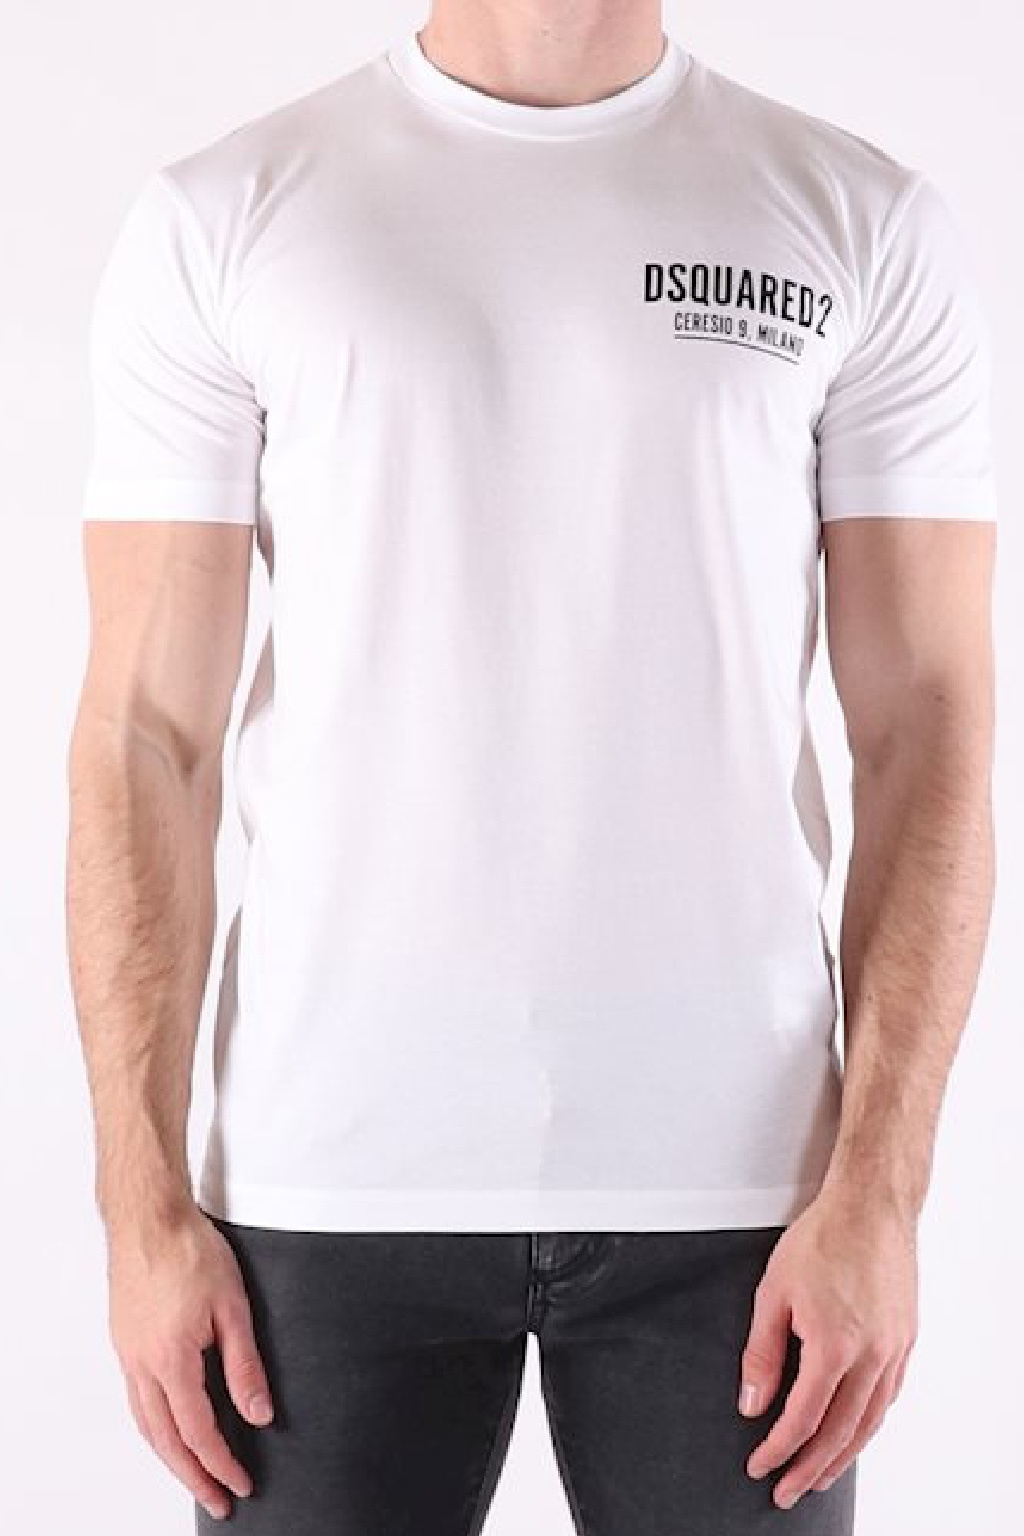 Pánské tričko Dsquared2 S71GD1116 bílé